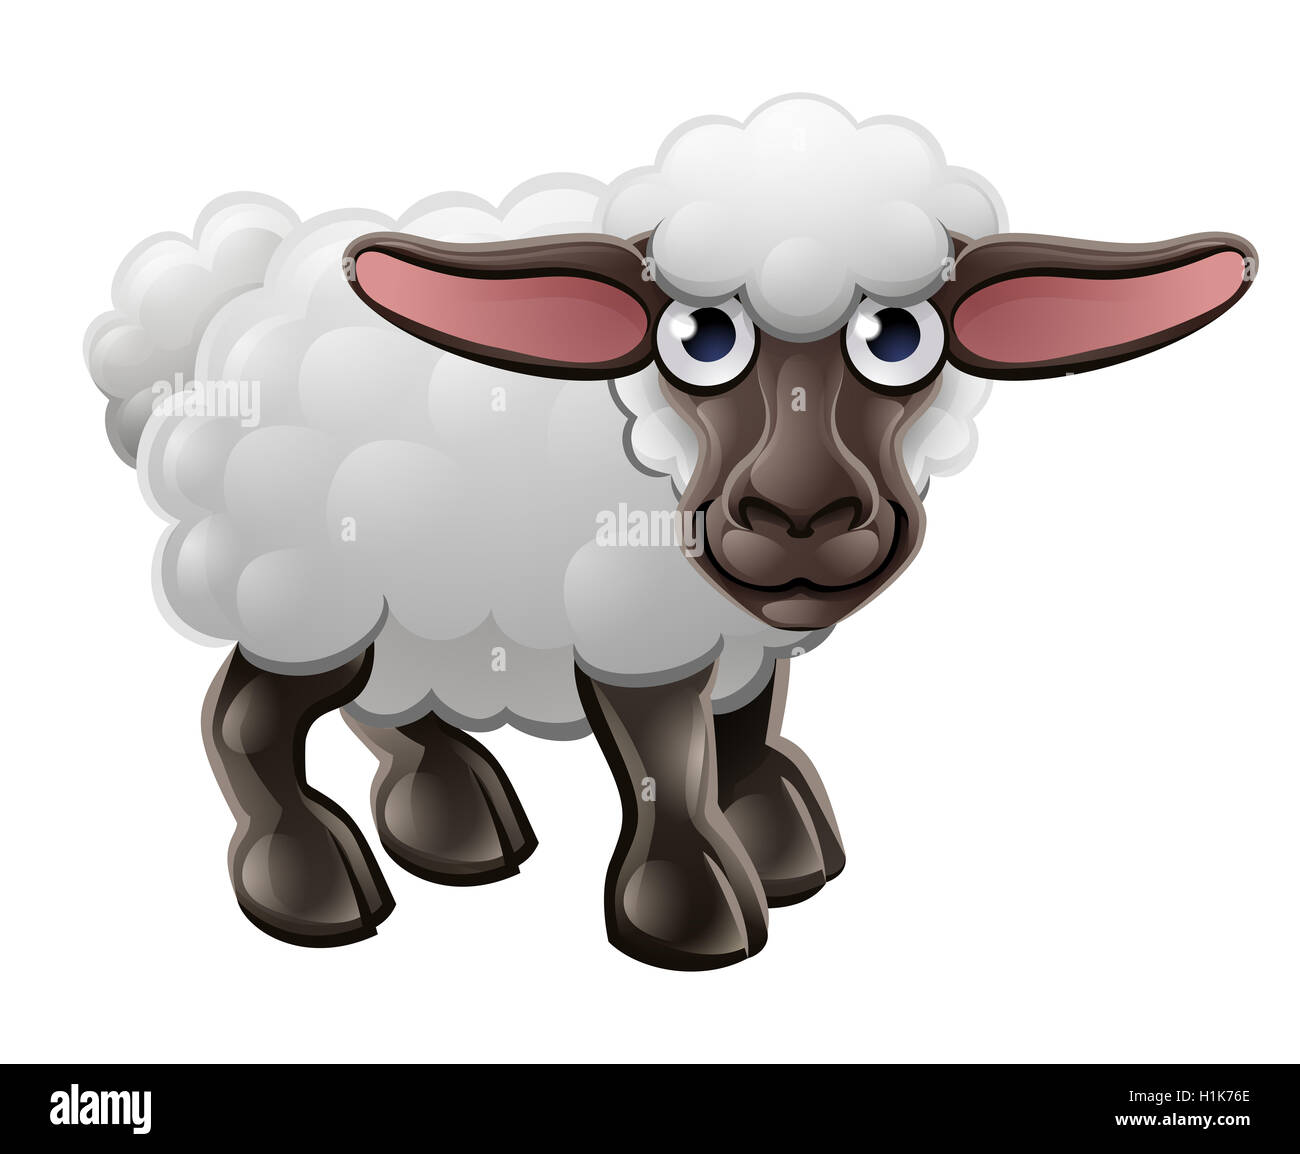 Eine niedliche Schafe Bauernhof Tier Comicfigur Stockfoto